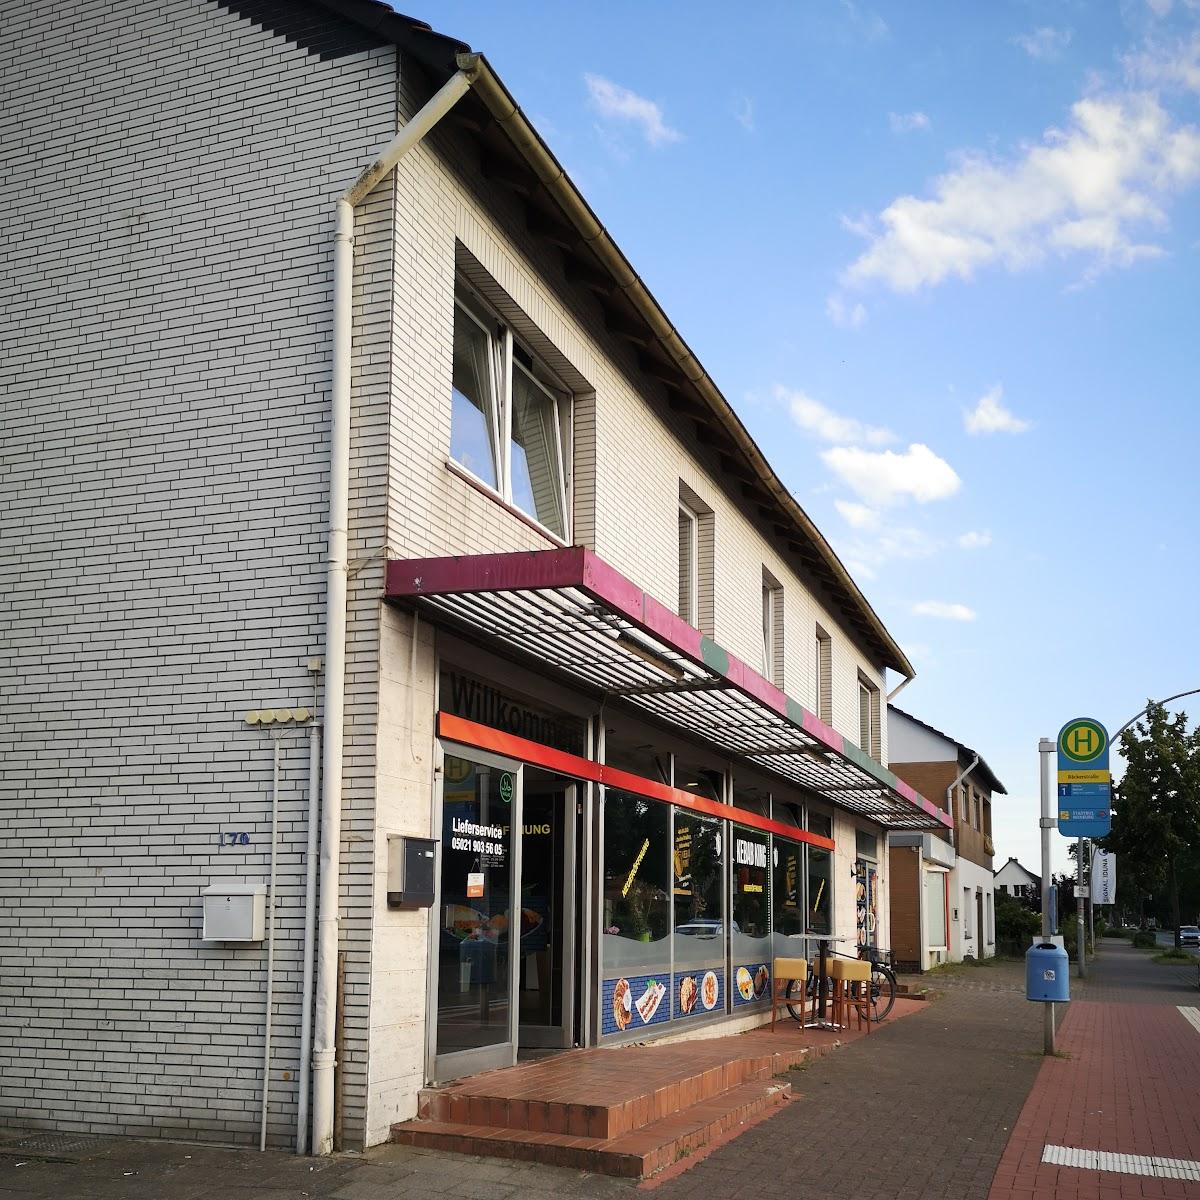 Restaurant "Kebab King" in Nienburg-Weser